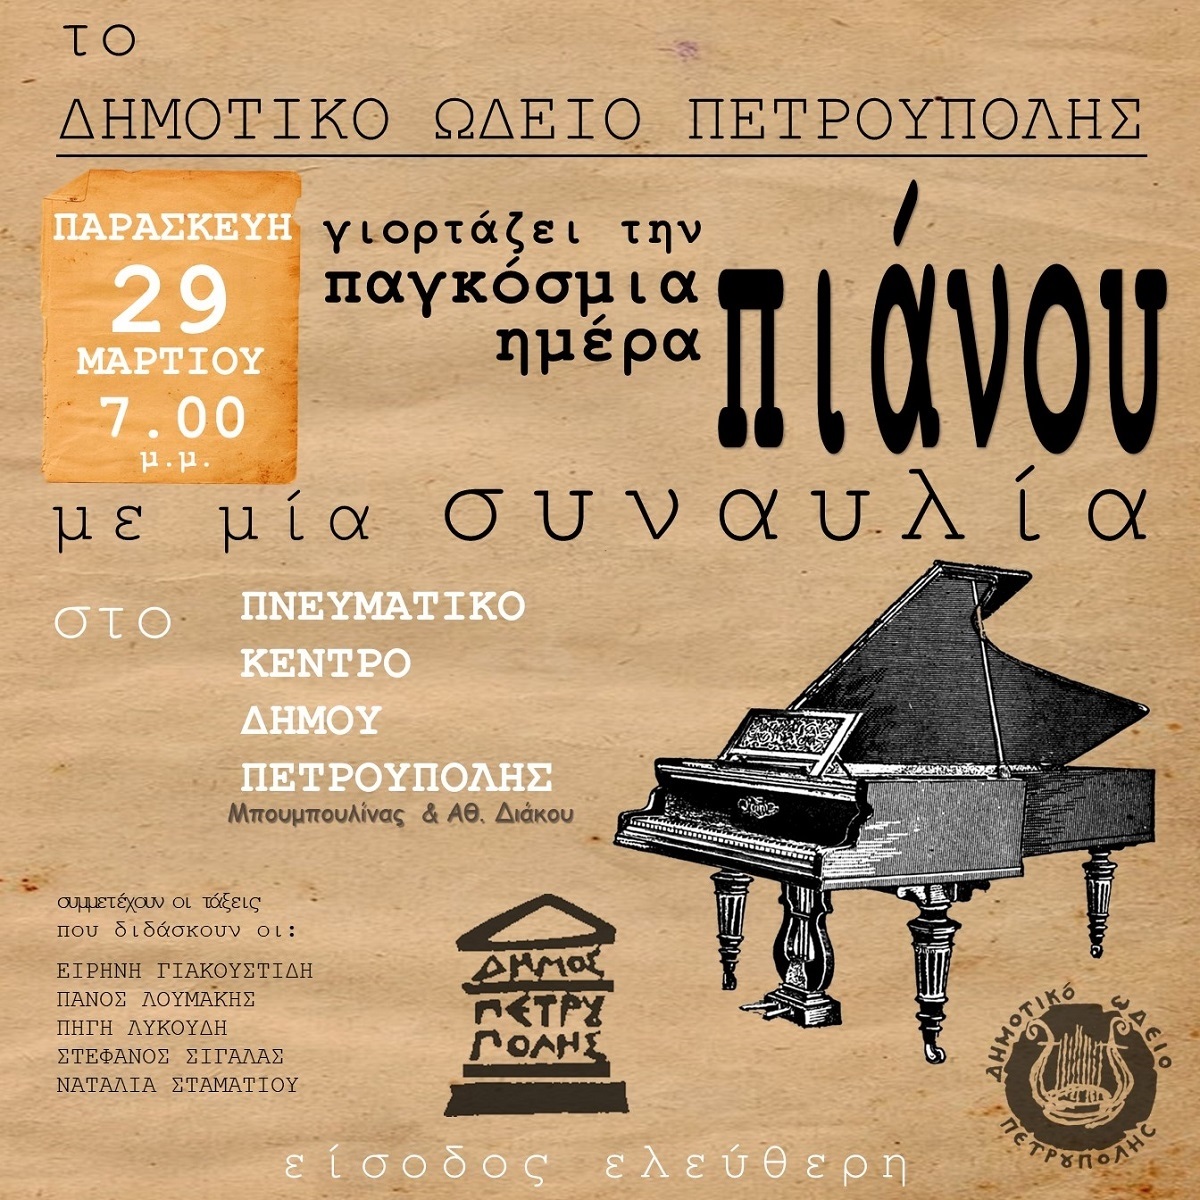 Το Δημοτικό Ωδείο Πετρούπολης γιορτάζει την Παγκόσμια Ημέρα Πιάνου